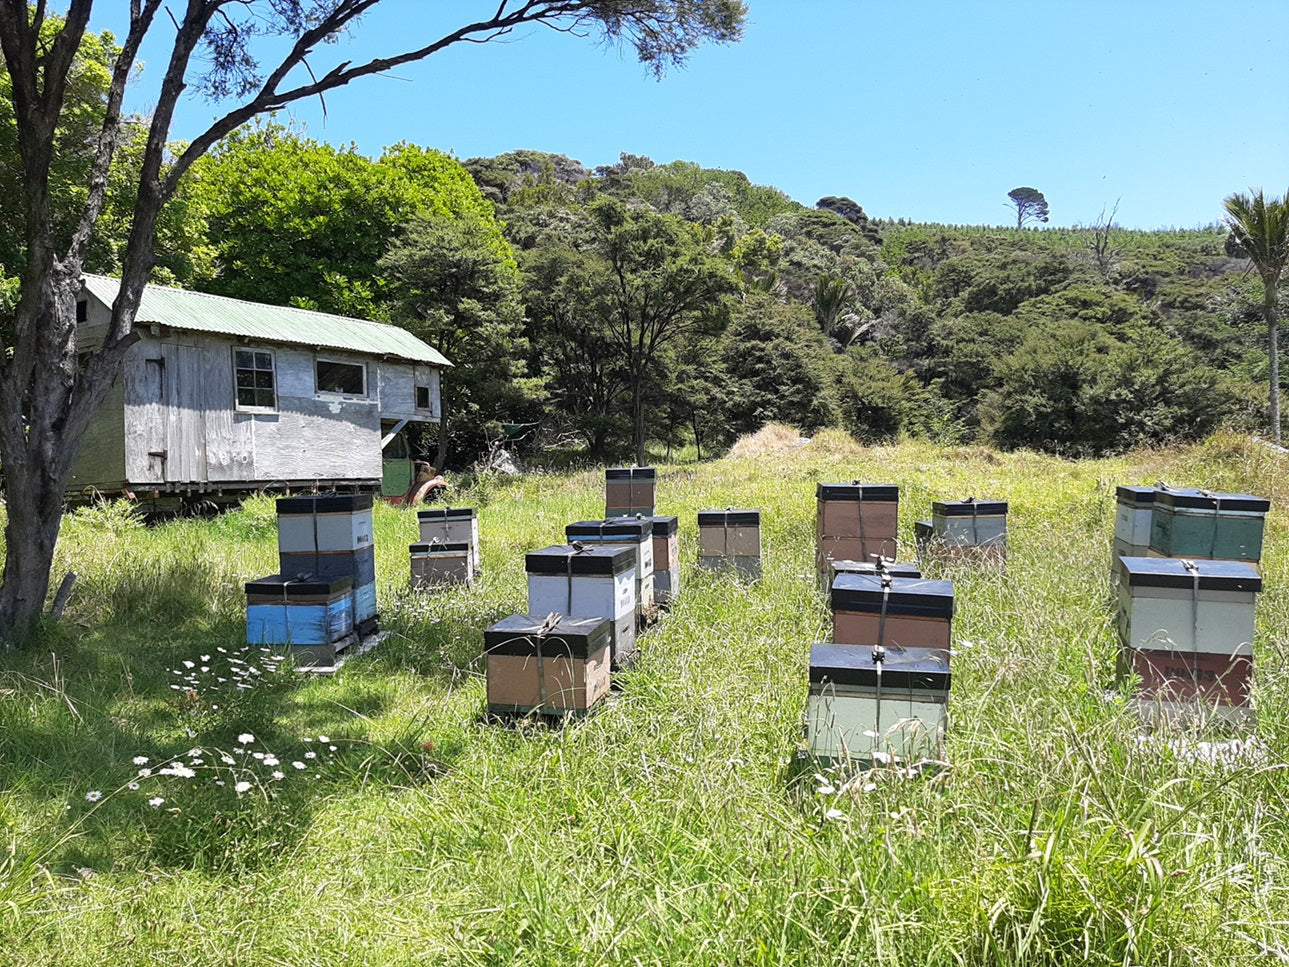 Bienenstöcke von Wild Honey in der Natur neben einem Holzhäuschen